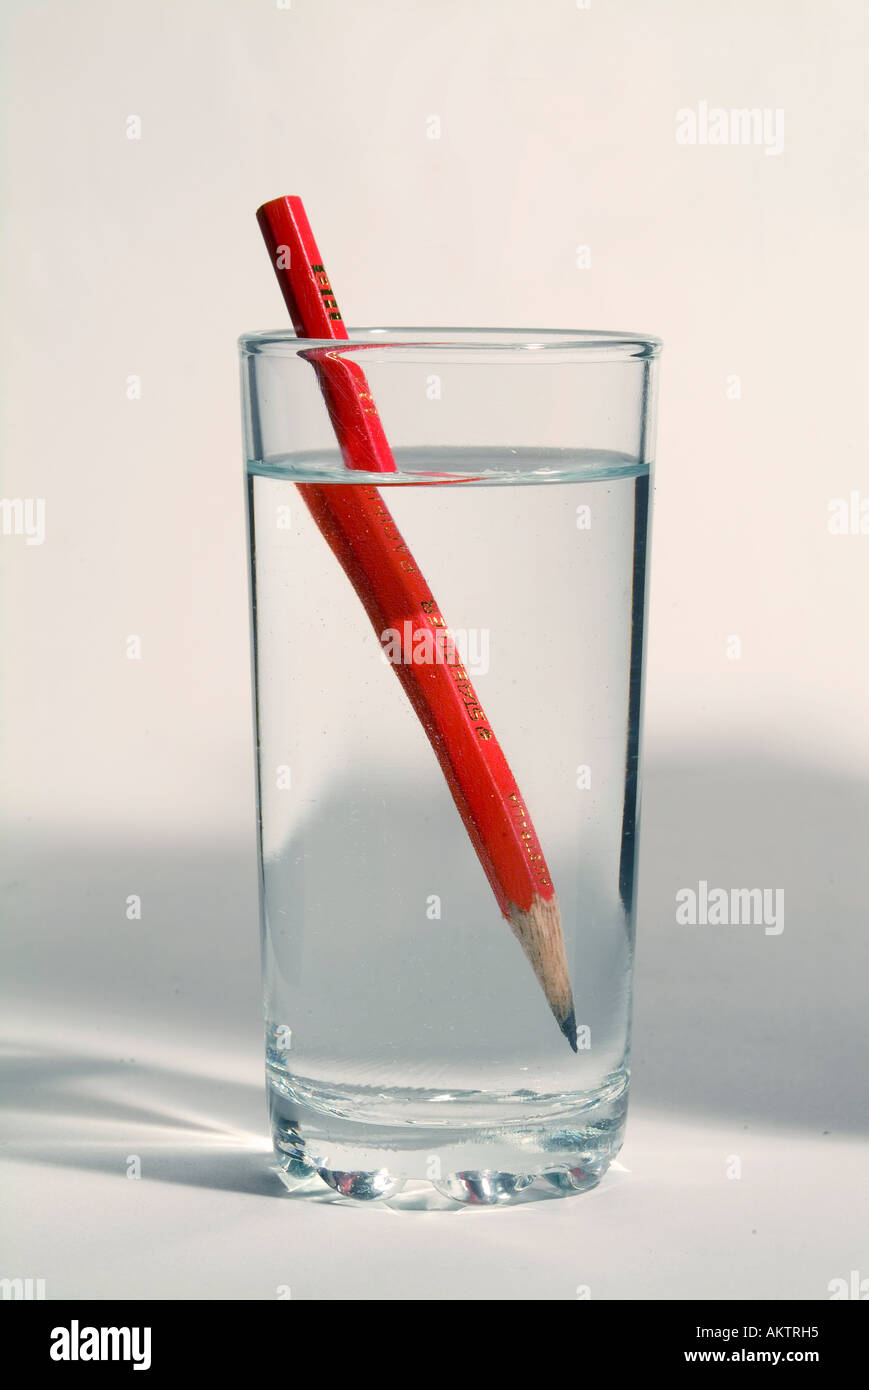 Un crayon dans un verre d'eau montrant la distorsion optique causé par la réfraction de l'image Banque D'Images